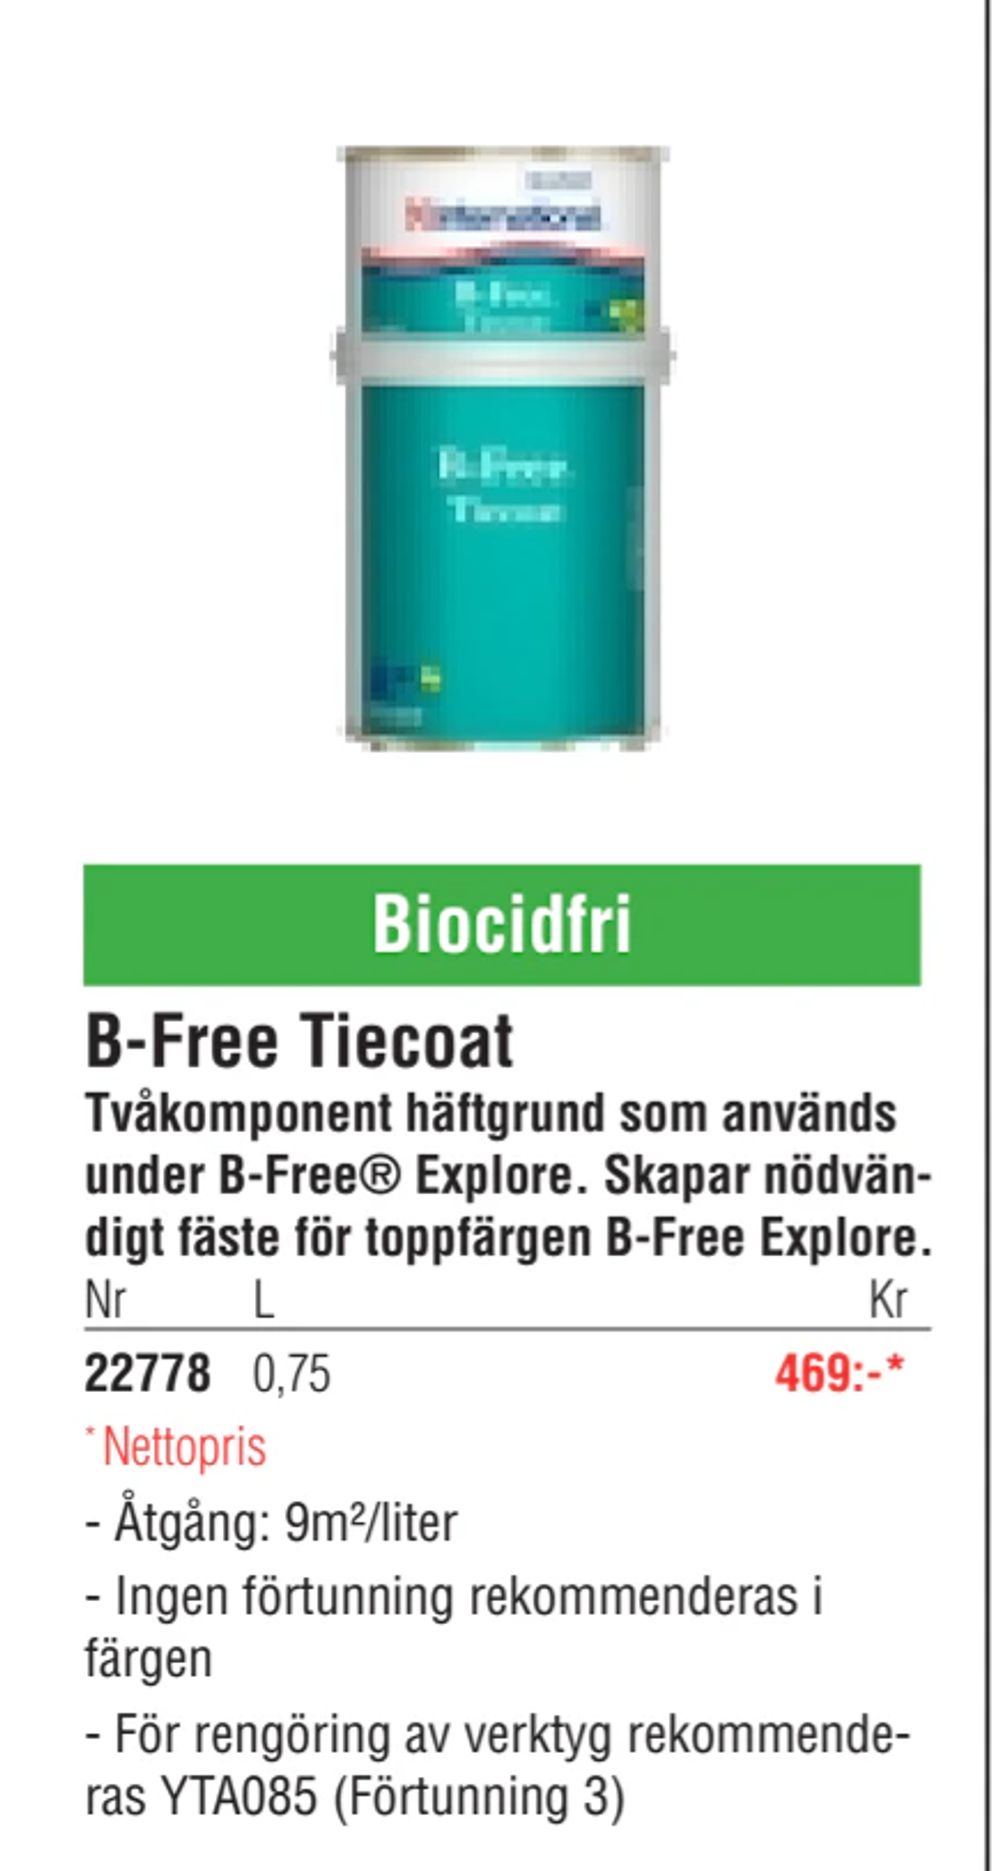 Erbjudanden på B-Free Tiecoat från Erlandsons Brygga för 465 kr